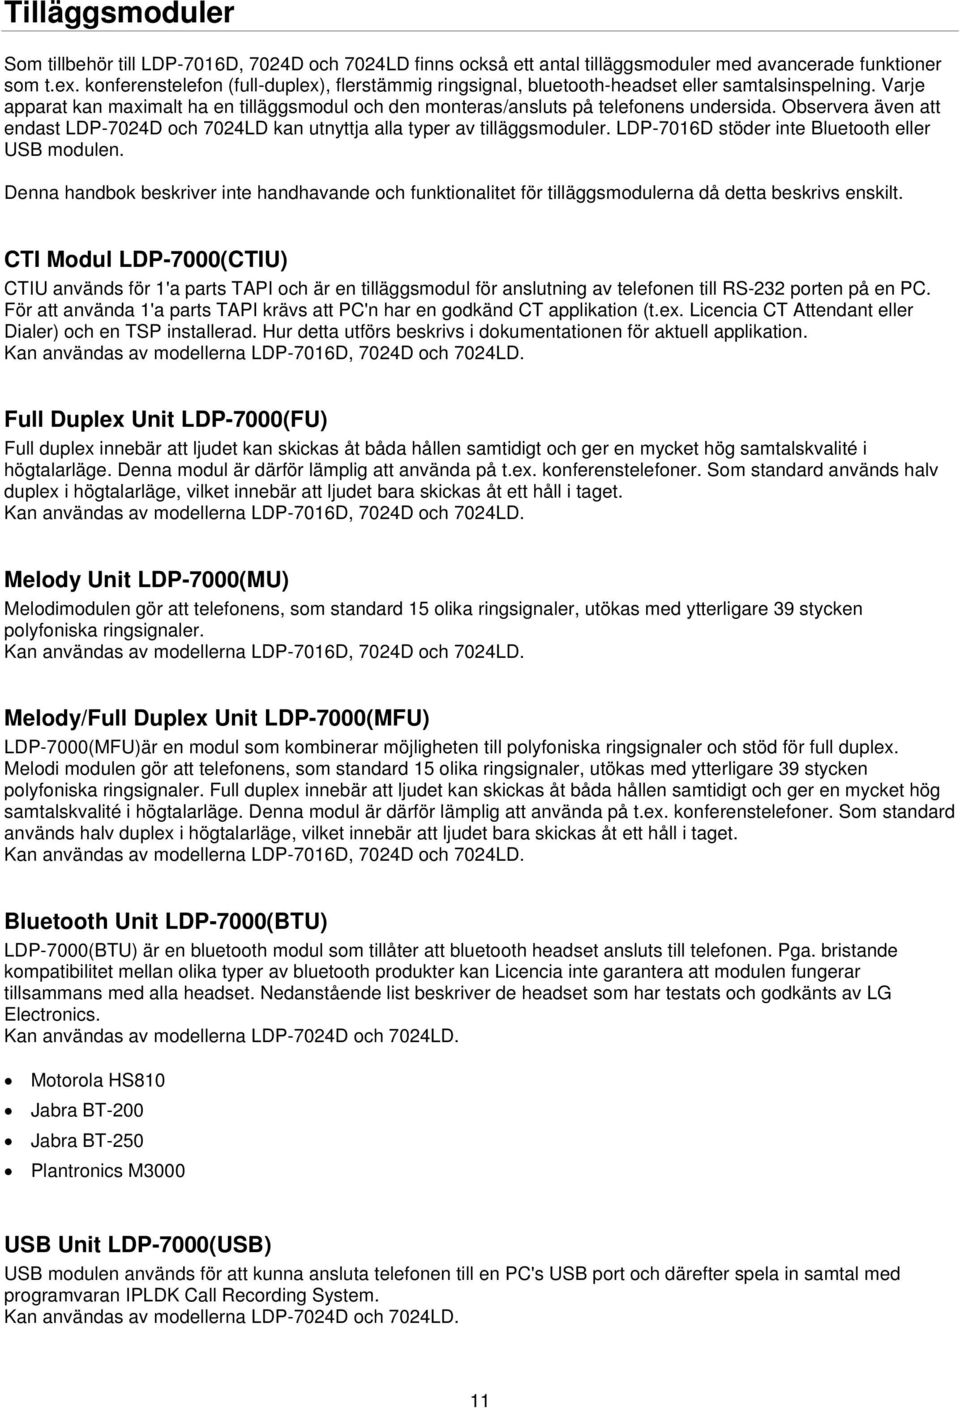 Observera även att endast LDP-7024D och 7024LD kan utnyttja alla typer av tilläggsmoduler. LDP-7016D stöder inte Bluetooth eller USB modulen.